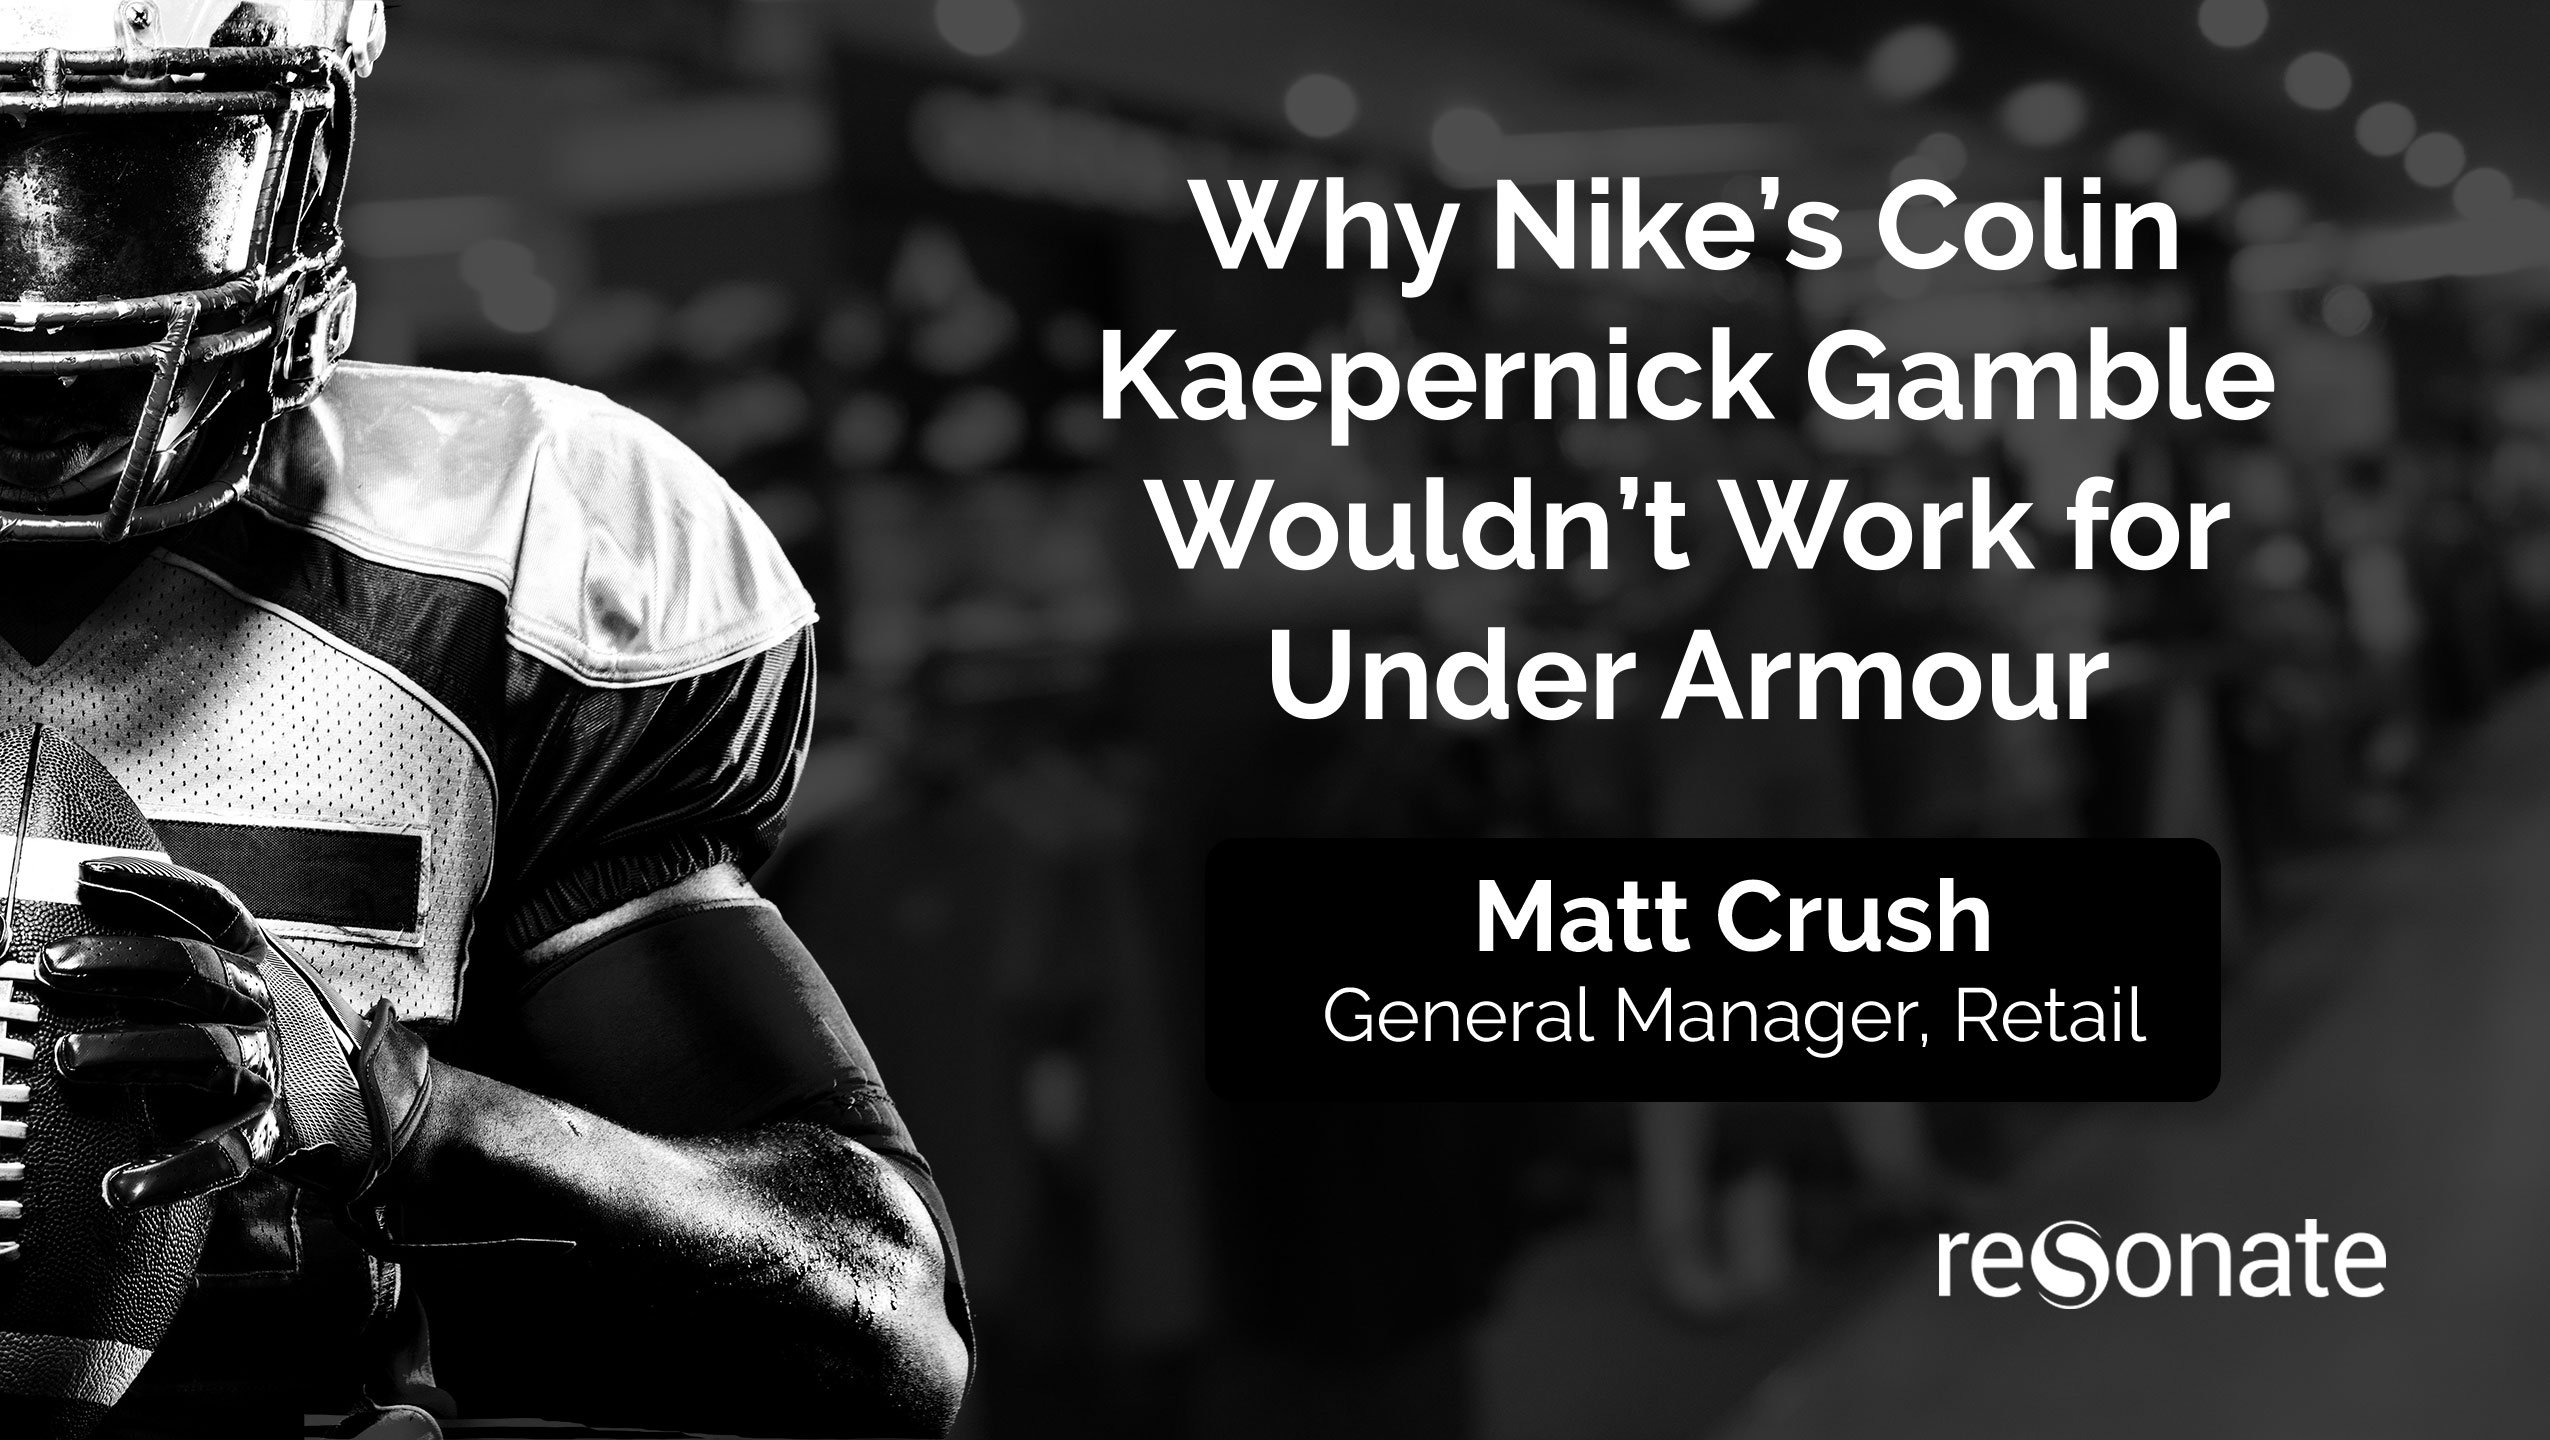 Retail-Matt-Crush-Nike-Article